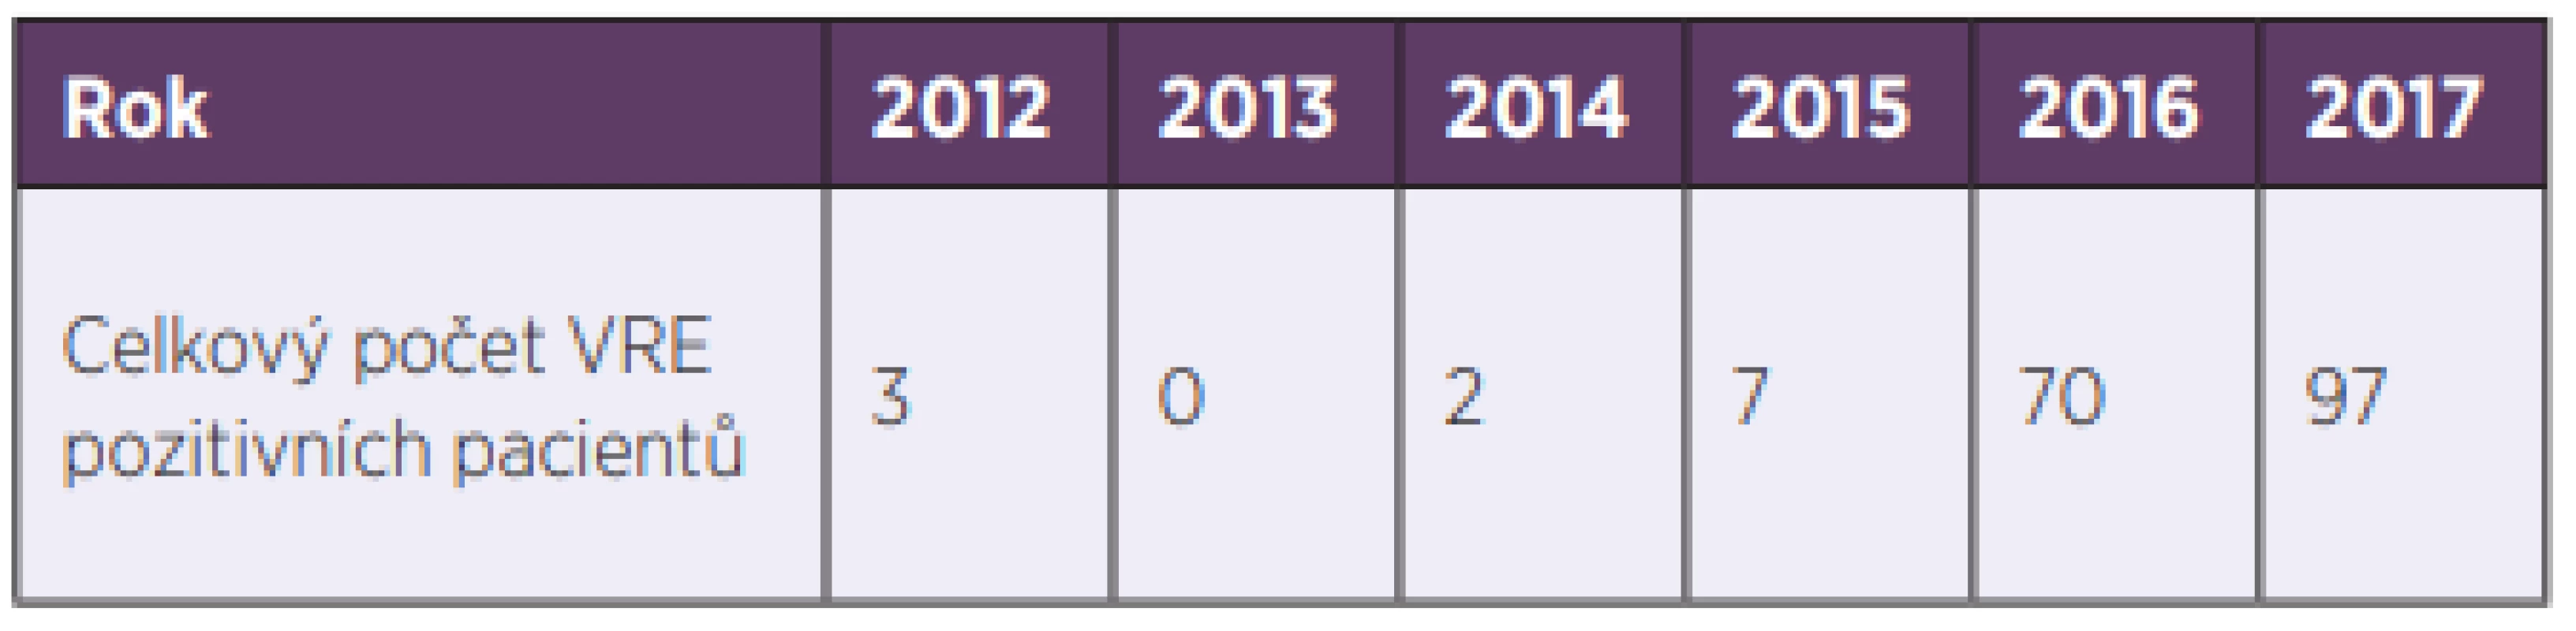  Počet VRE izolovaných ve FN HK v letech 2013–2017<br>
Table 1. VRE isolated in the HKUH in 2013–20177